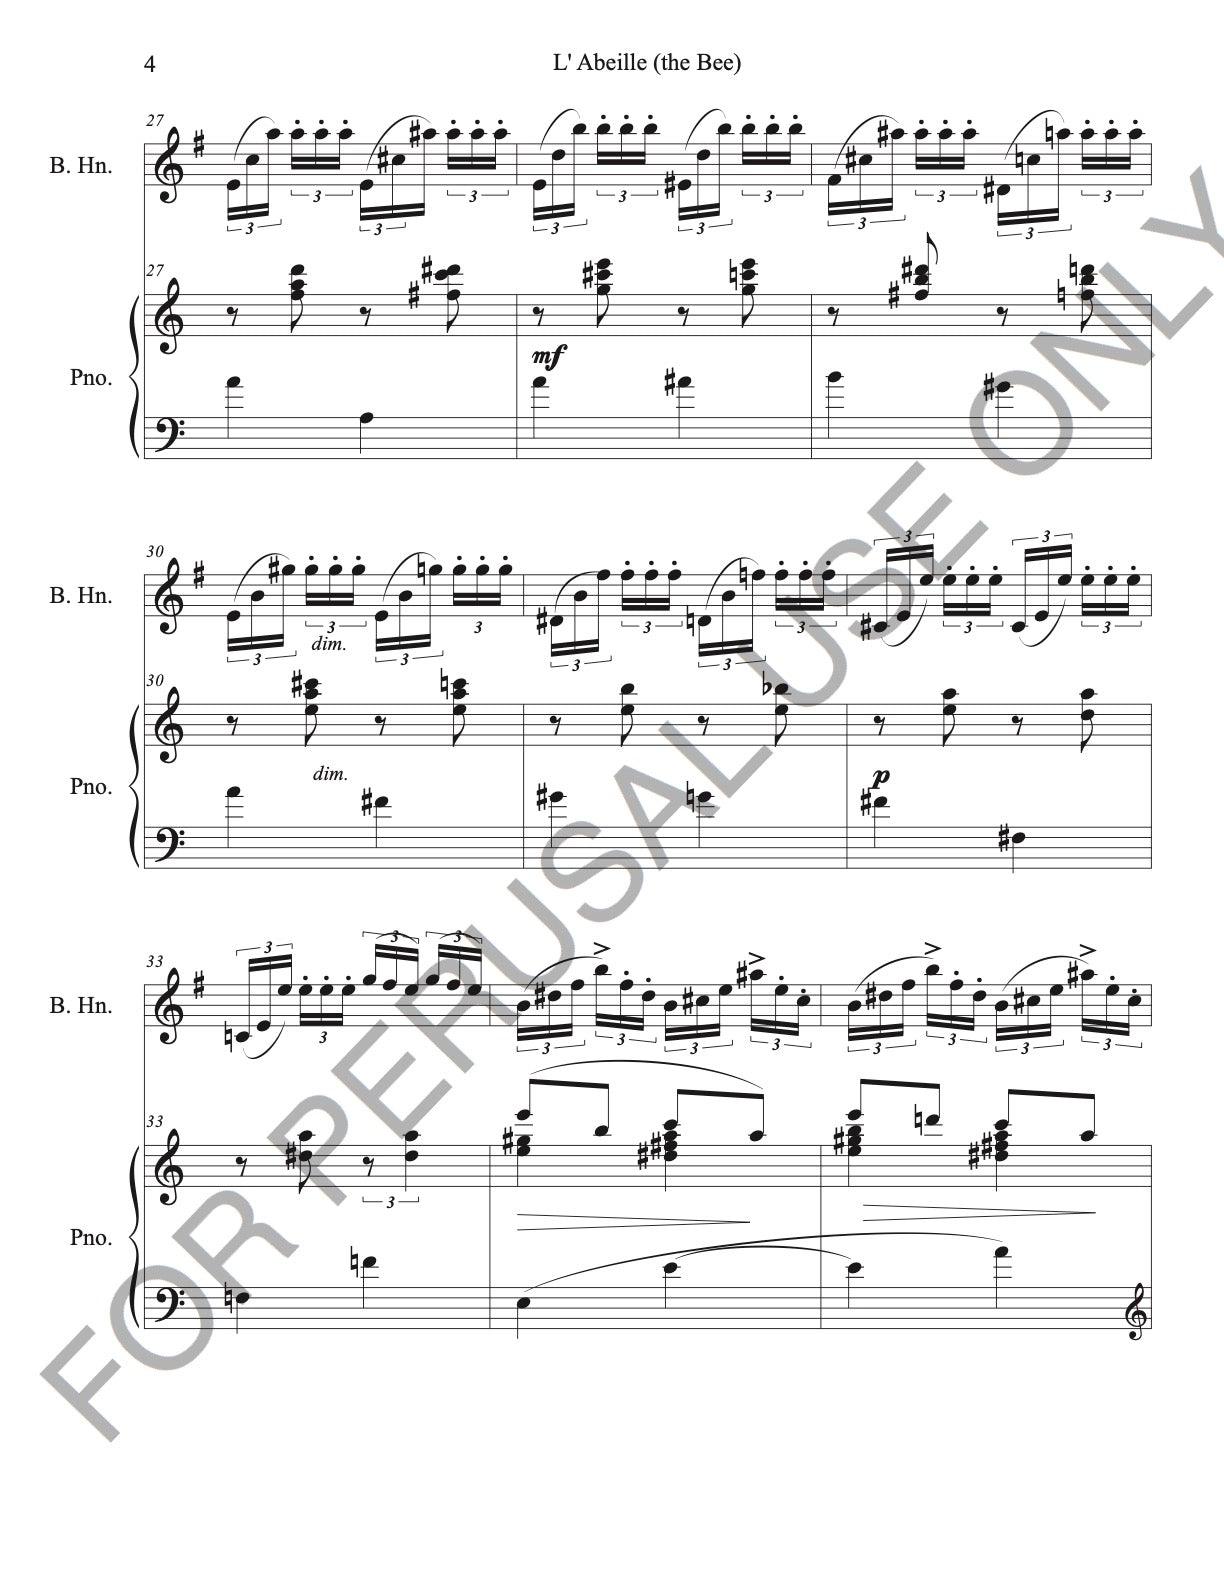 Basset Horn and Piano sheet music:Schubert's L'Abeille (The Bee) - ChaipruckMekara